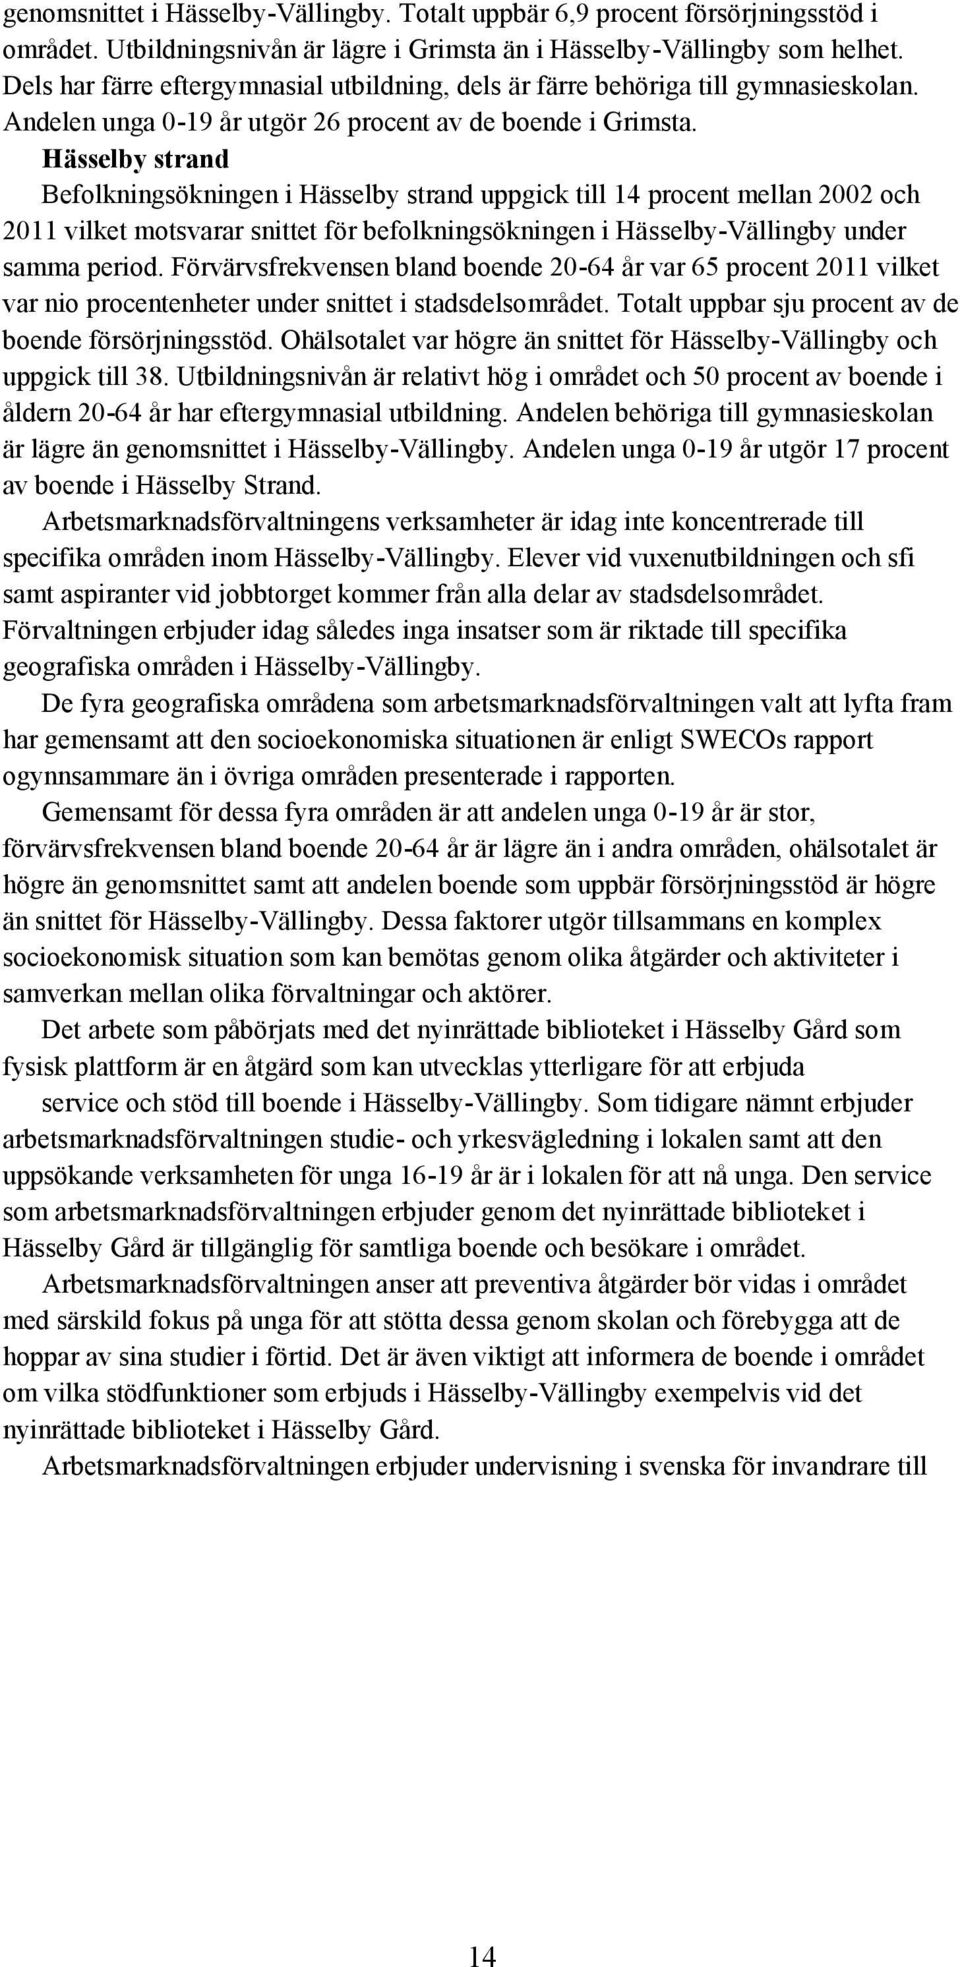 Hässelby strand Befolkningsökningen i Hässelby strand uppgick till 14 procent mellan 2002 och 2011 vilket motsvarar snittet för befolkningsökningen i Hässelby-Vällingby under samma period.